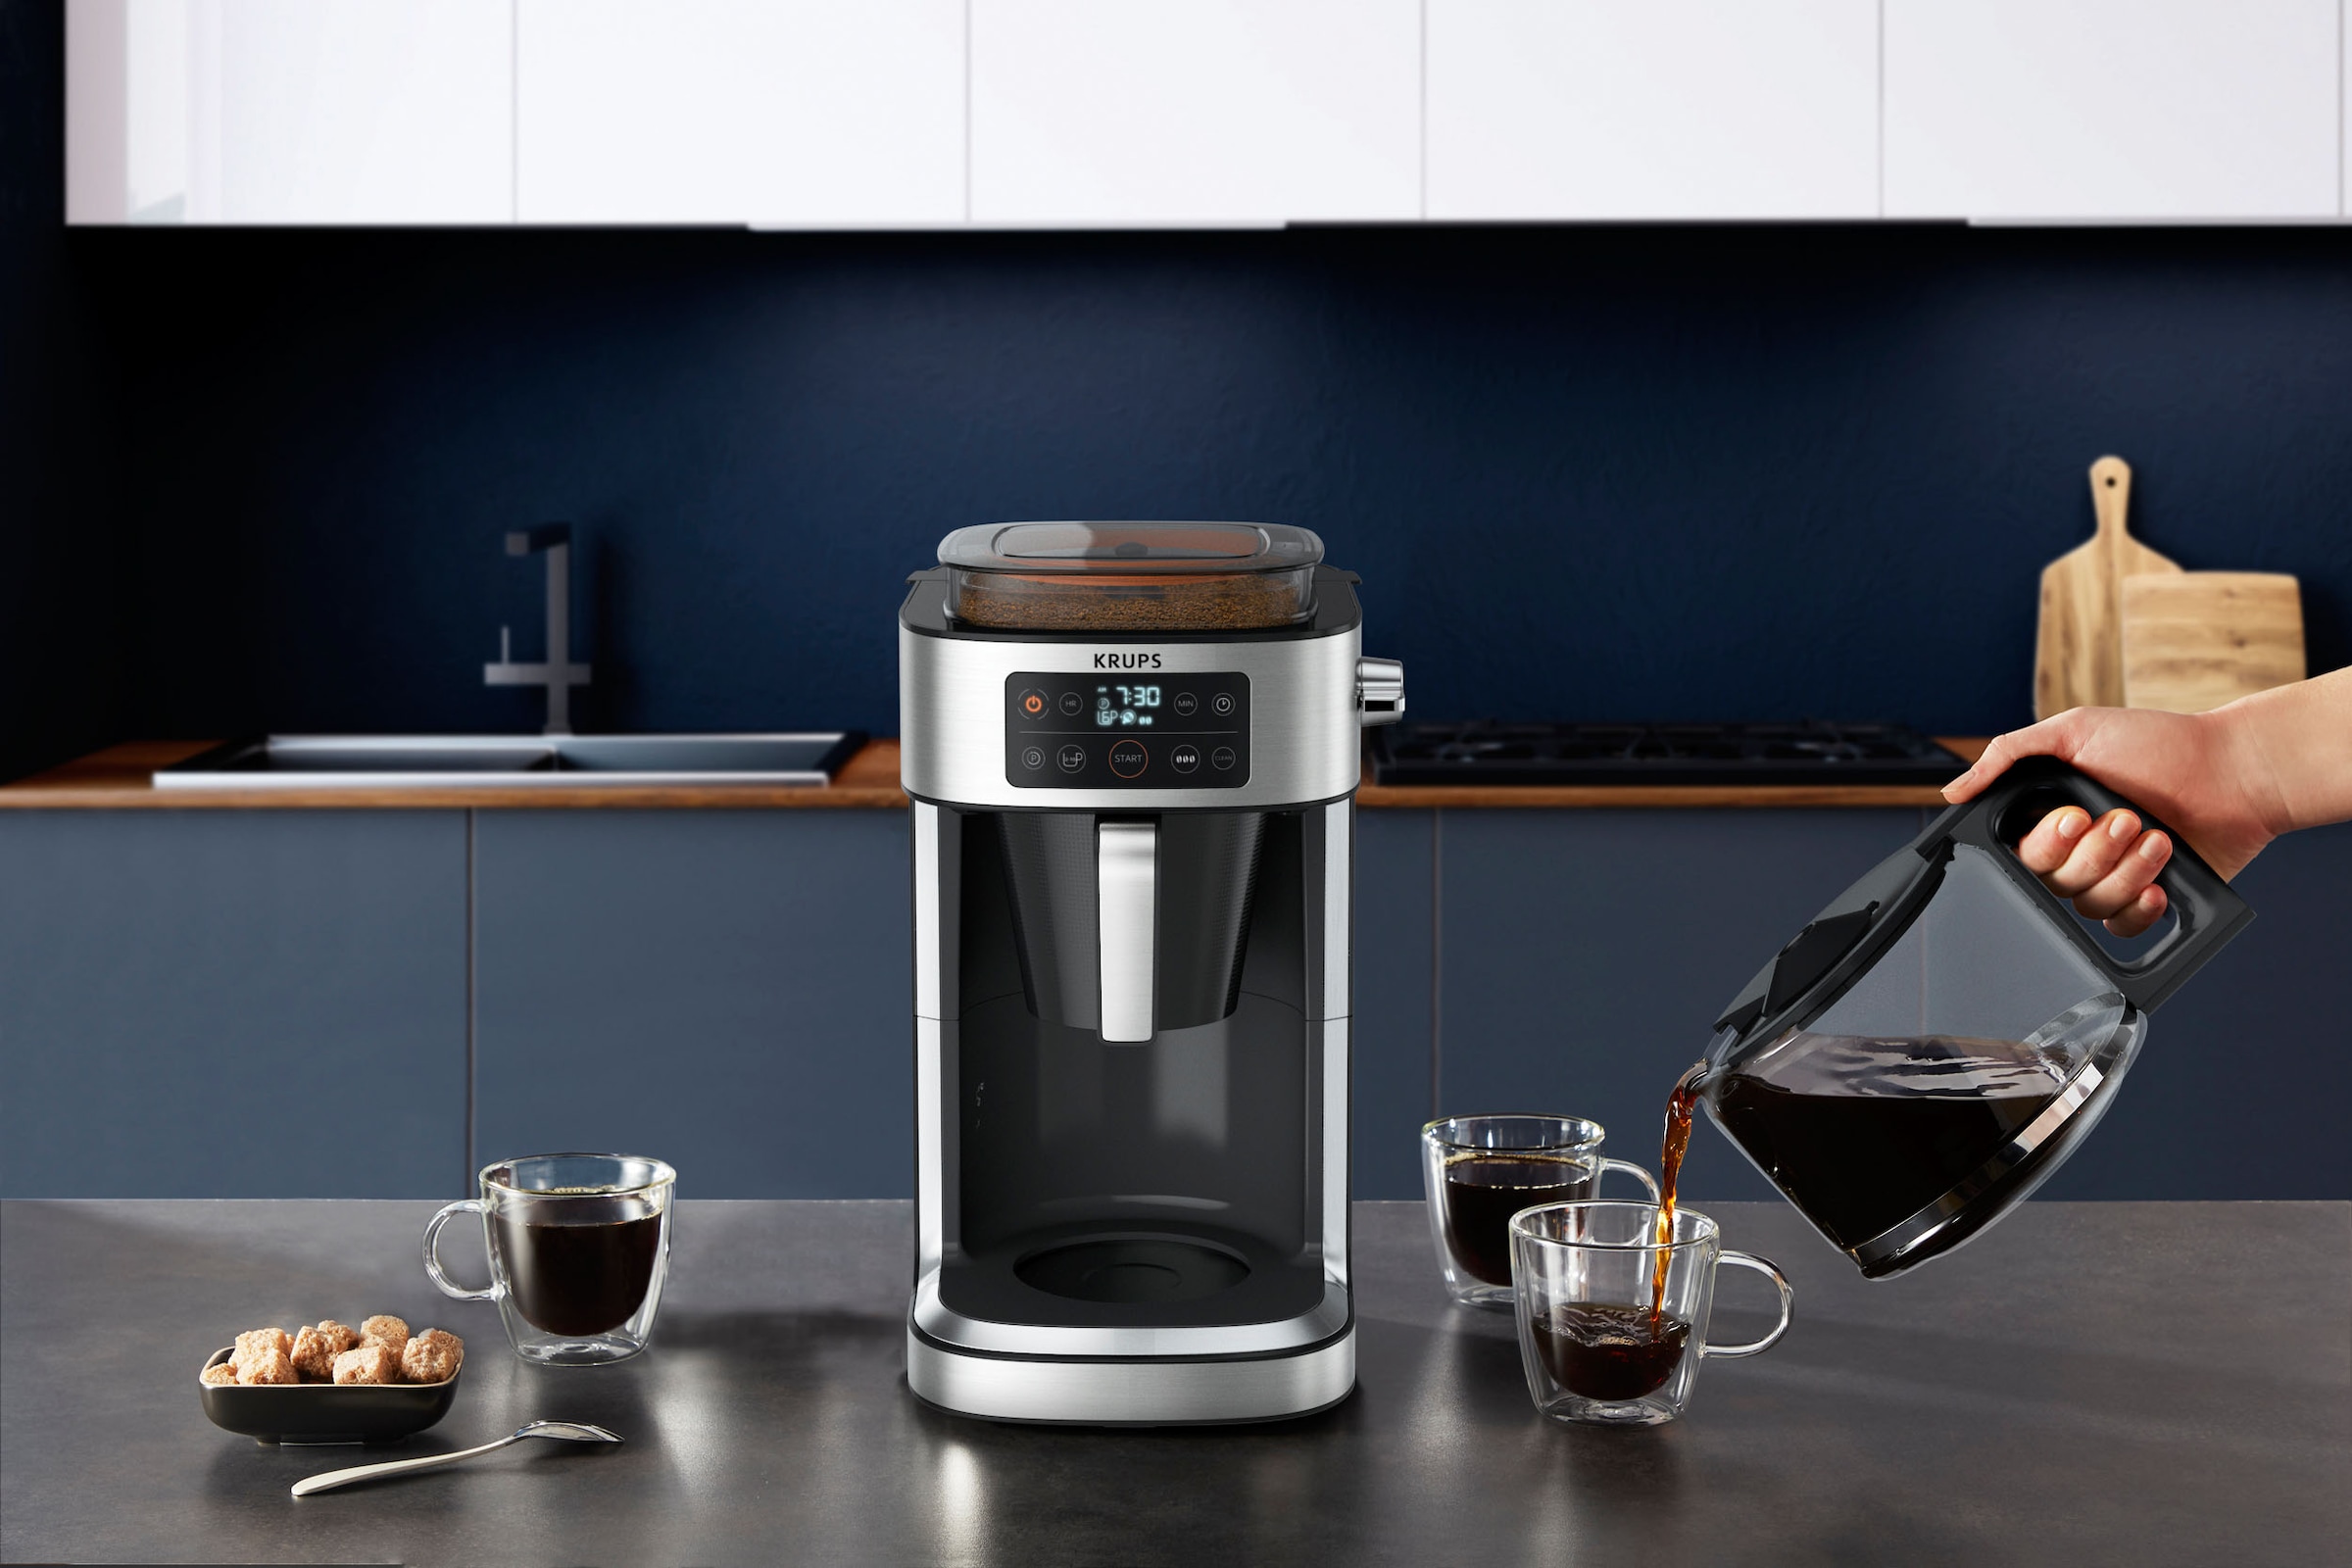 Krups Filterkaffeemaschine »KM760D Aroma Partner«, 1,25 l Kaffeekanne, integrierte Kaffee-Vorratsbox für bis zu 400 g frischen Kaffee